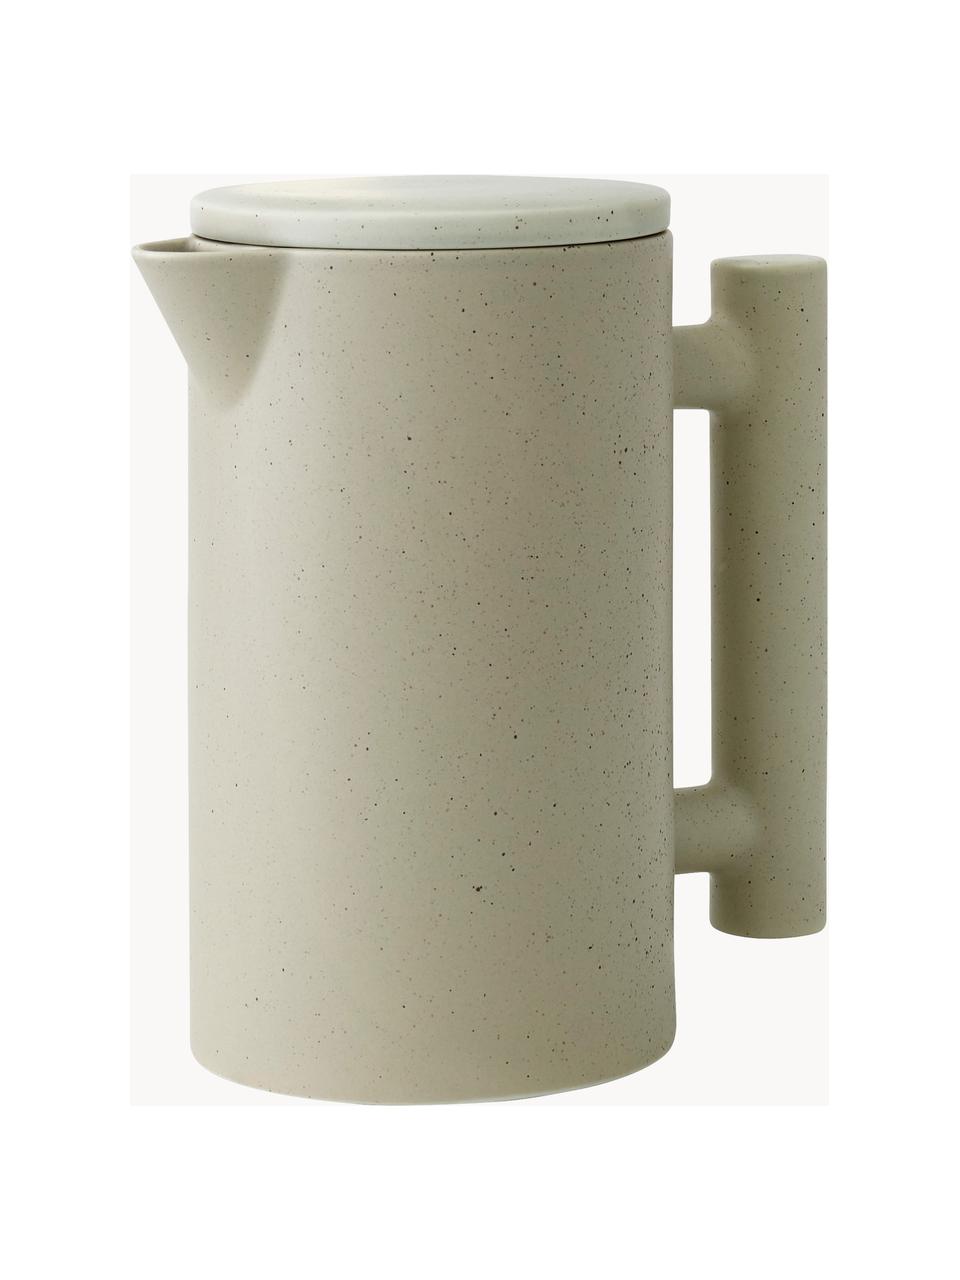 Teiera in ceramica Yana, 1 L, Ceramica, Beige maculato, 1 L